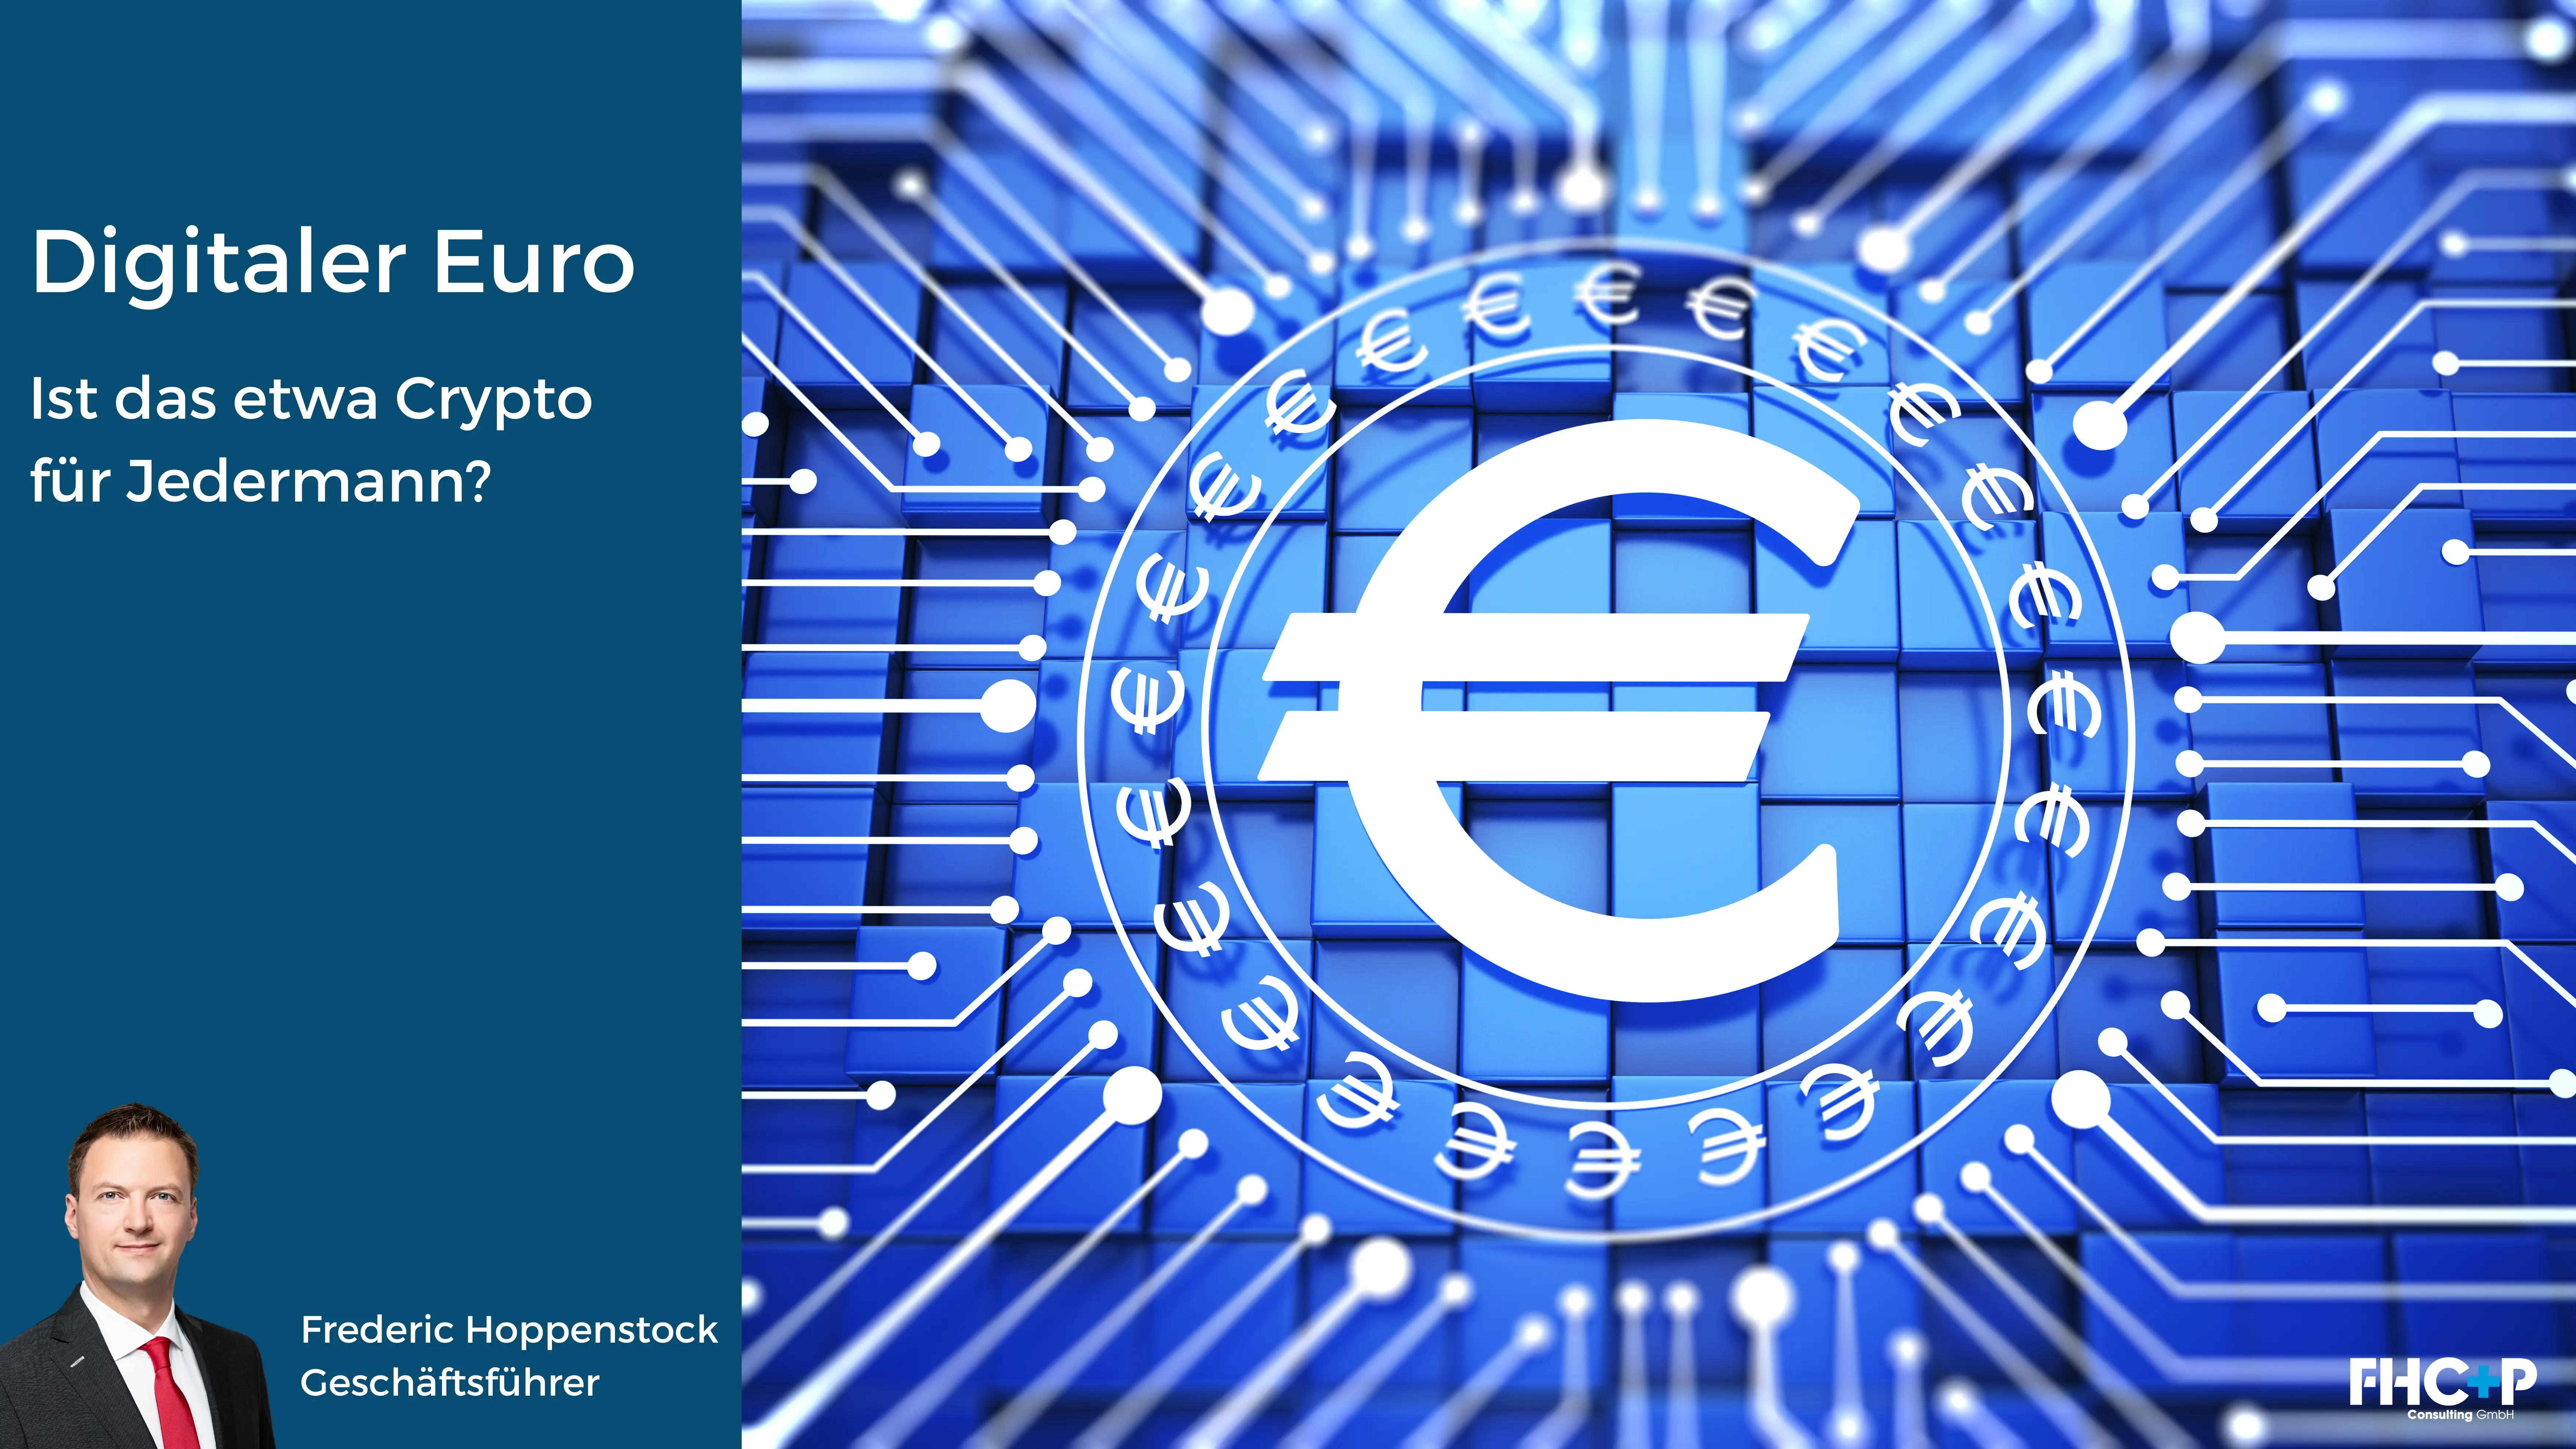 Digitaler Euro – ist das etwa Crypto für Jedermann?